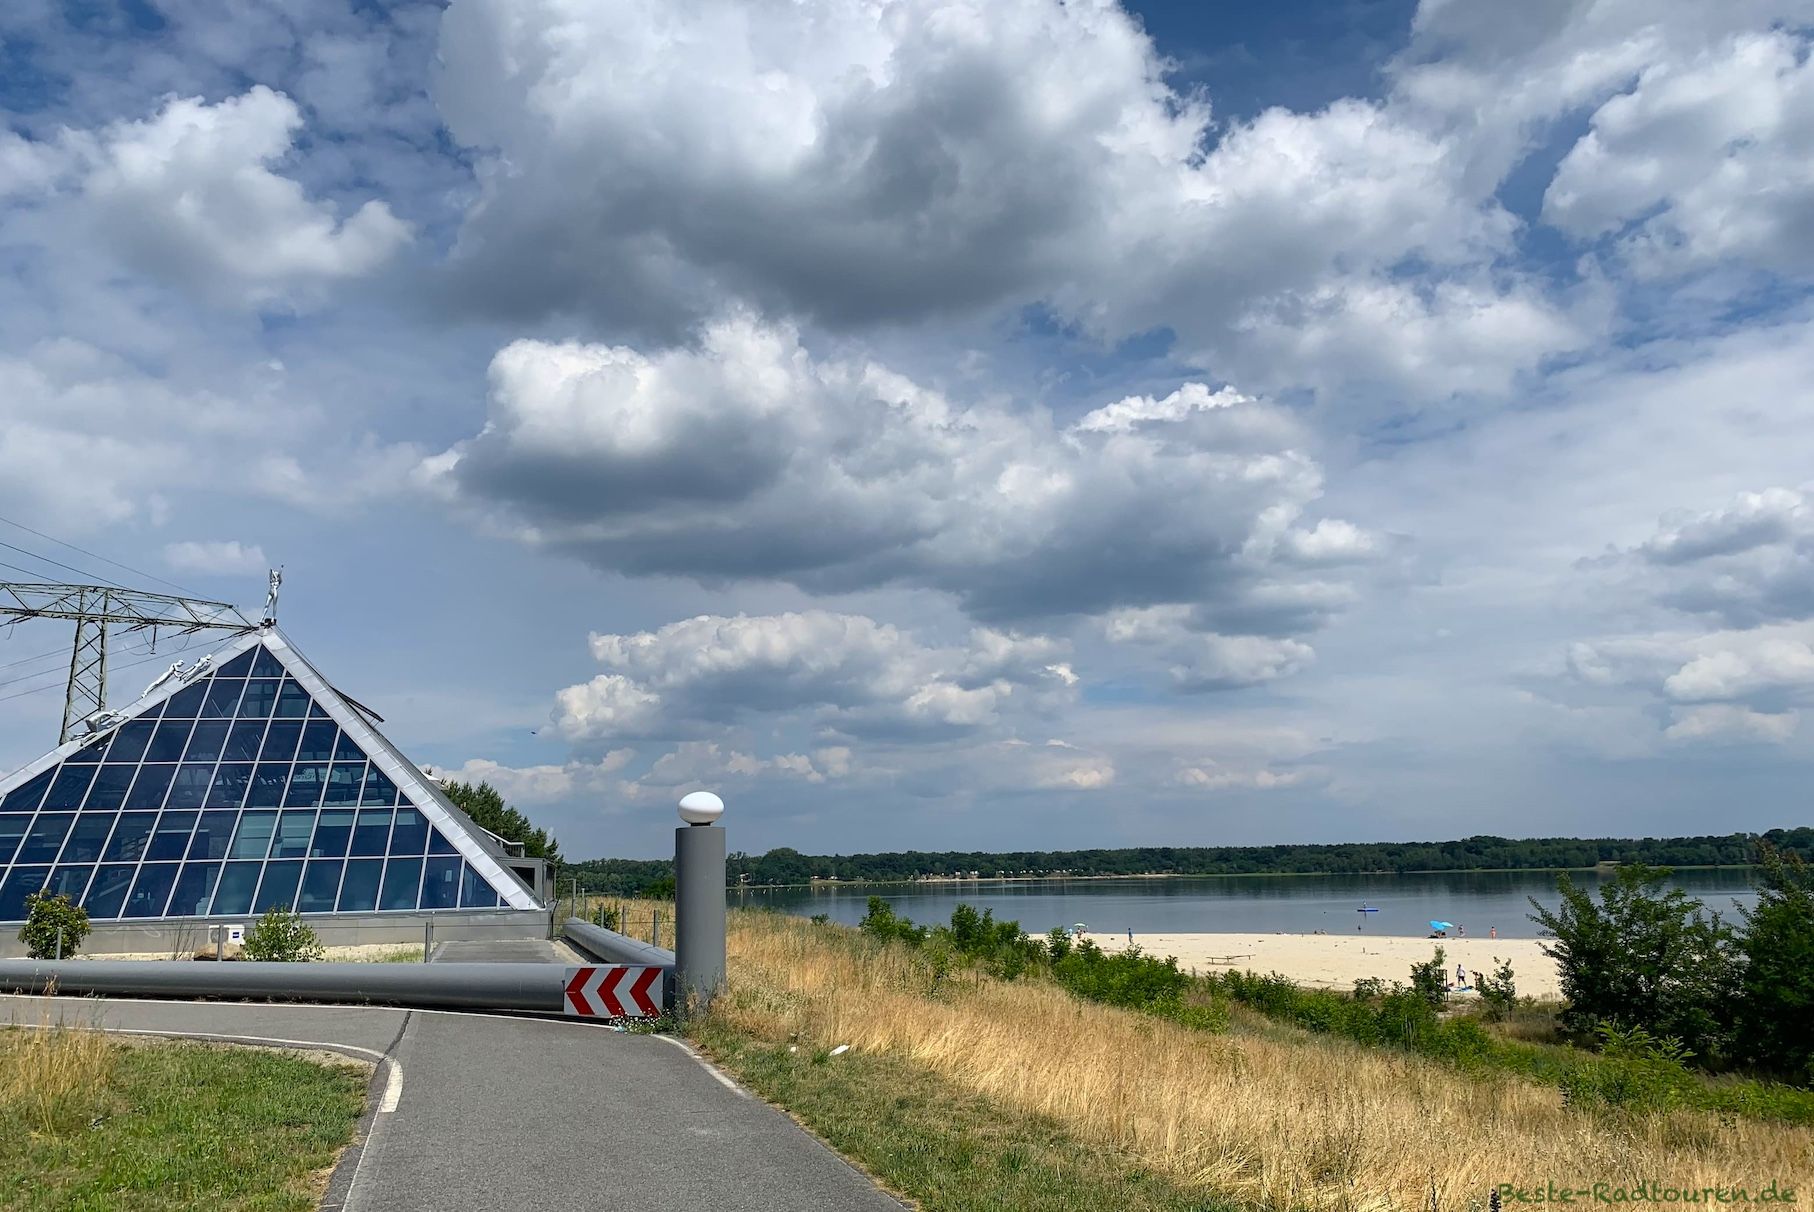 Foto am Süd-Ufer vom Dreiweiberner See bei Lohsa: Glaspyramide